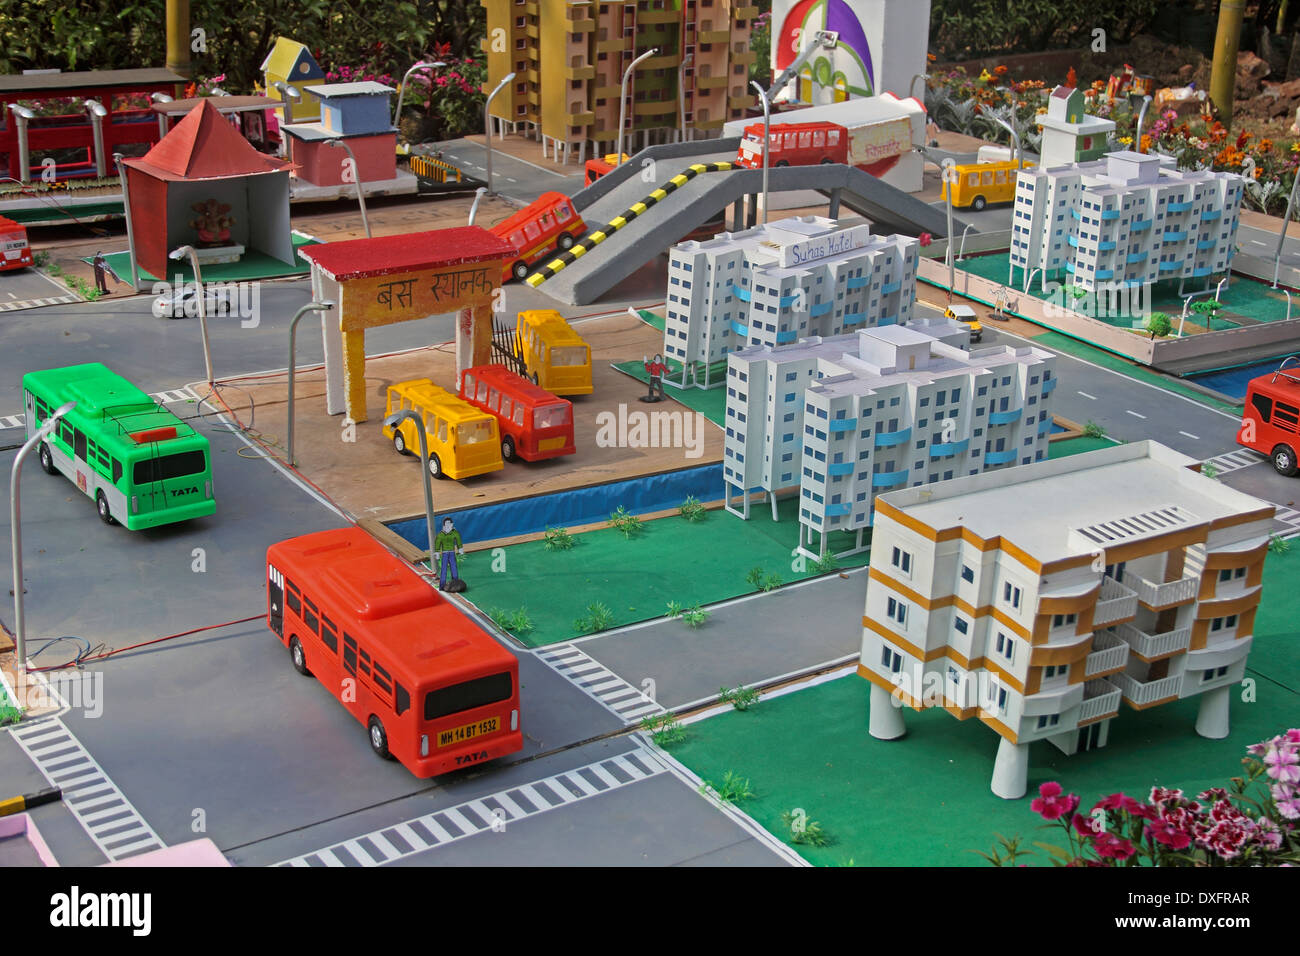 Architekturmodell von Gebäuden, Straßen mit Verkehr Stockfoto